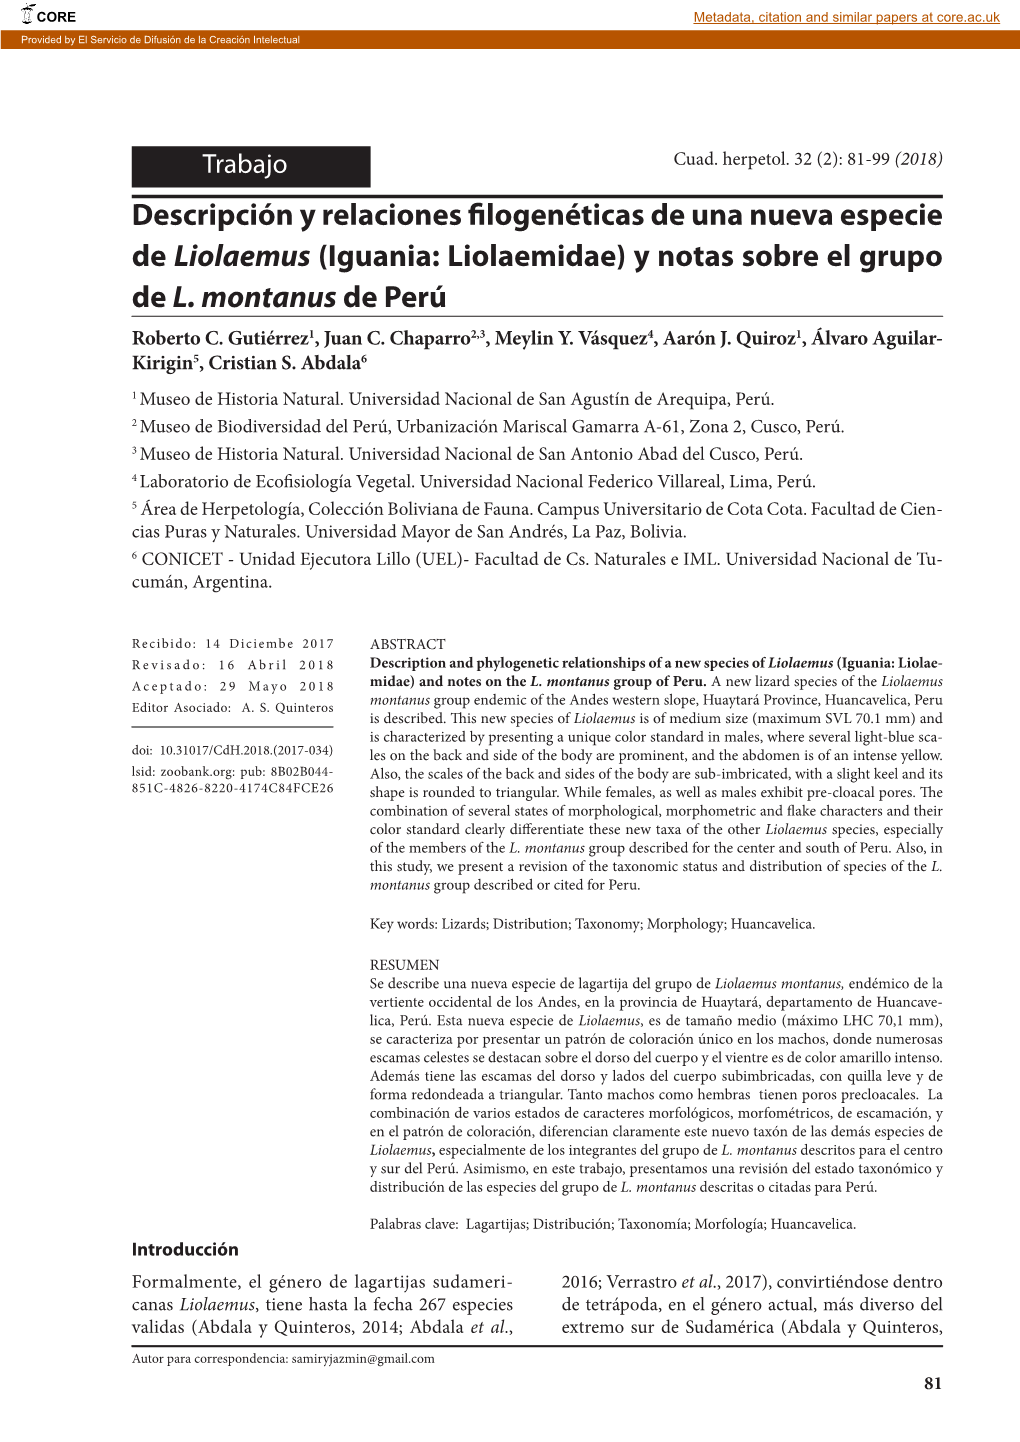 Iguania: Liolaemidae) Y Notas Sobre El Grupo De L